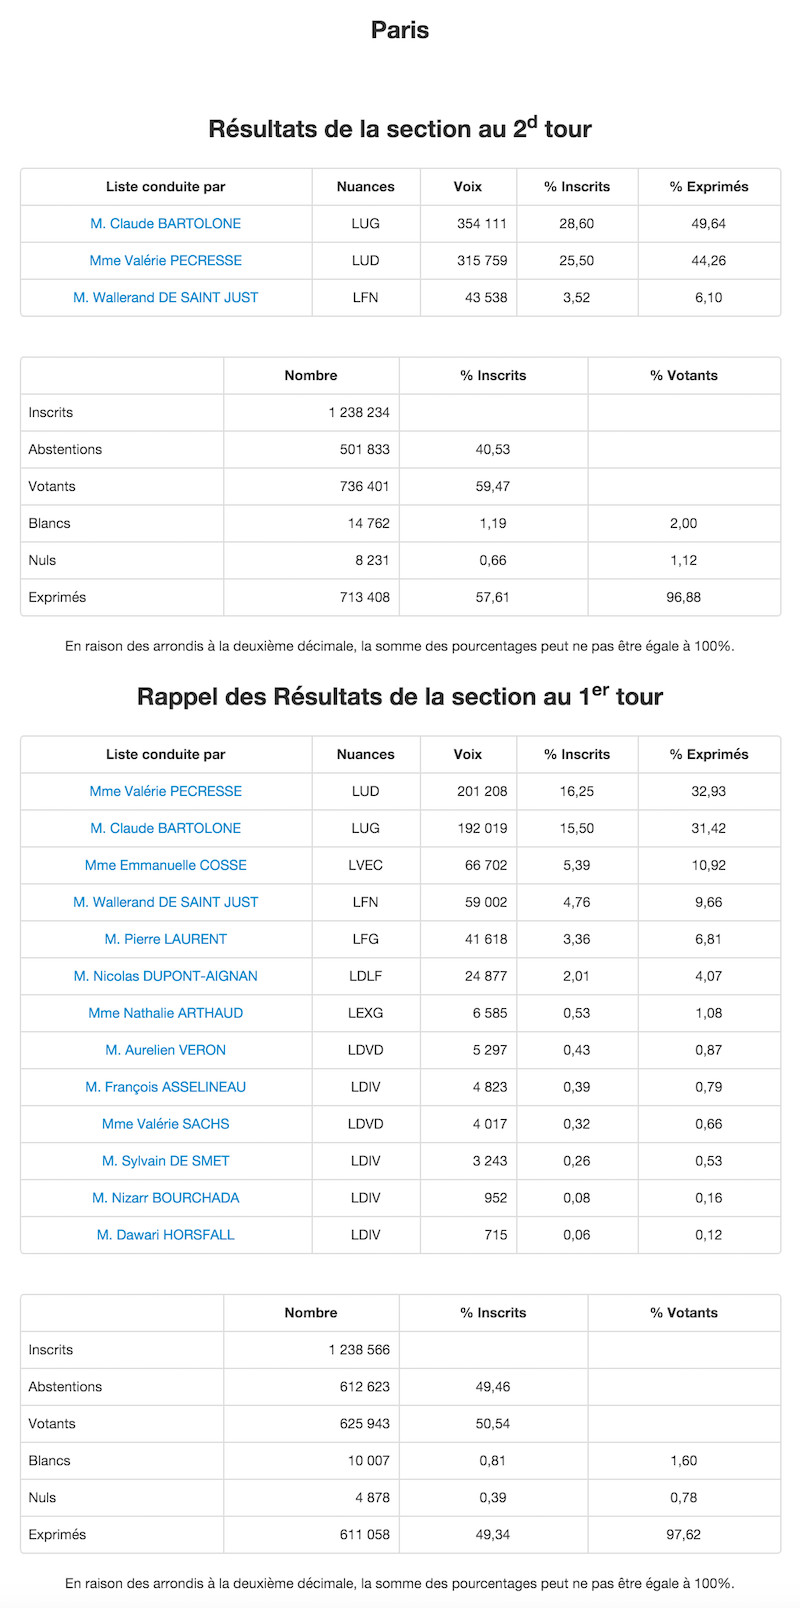 Régionales 2015 et 2010 dans le 18e arrondissement de Paris